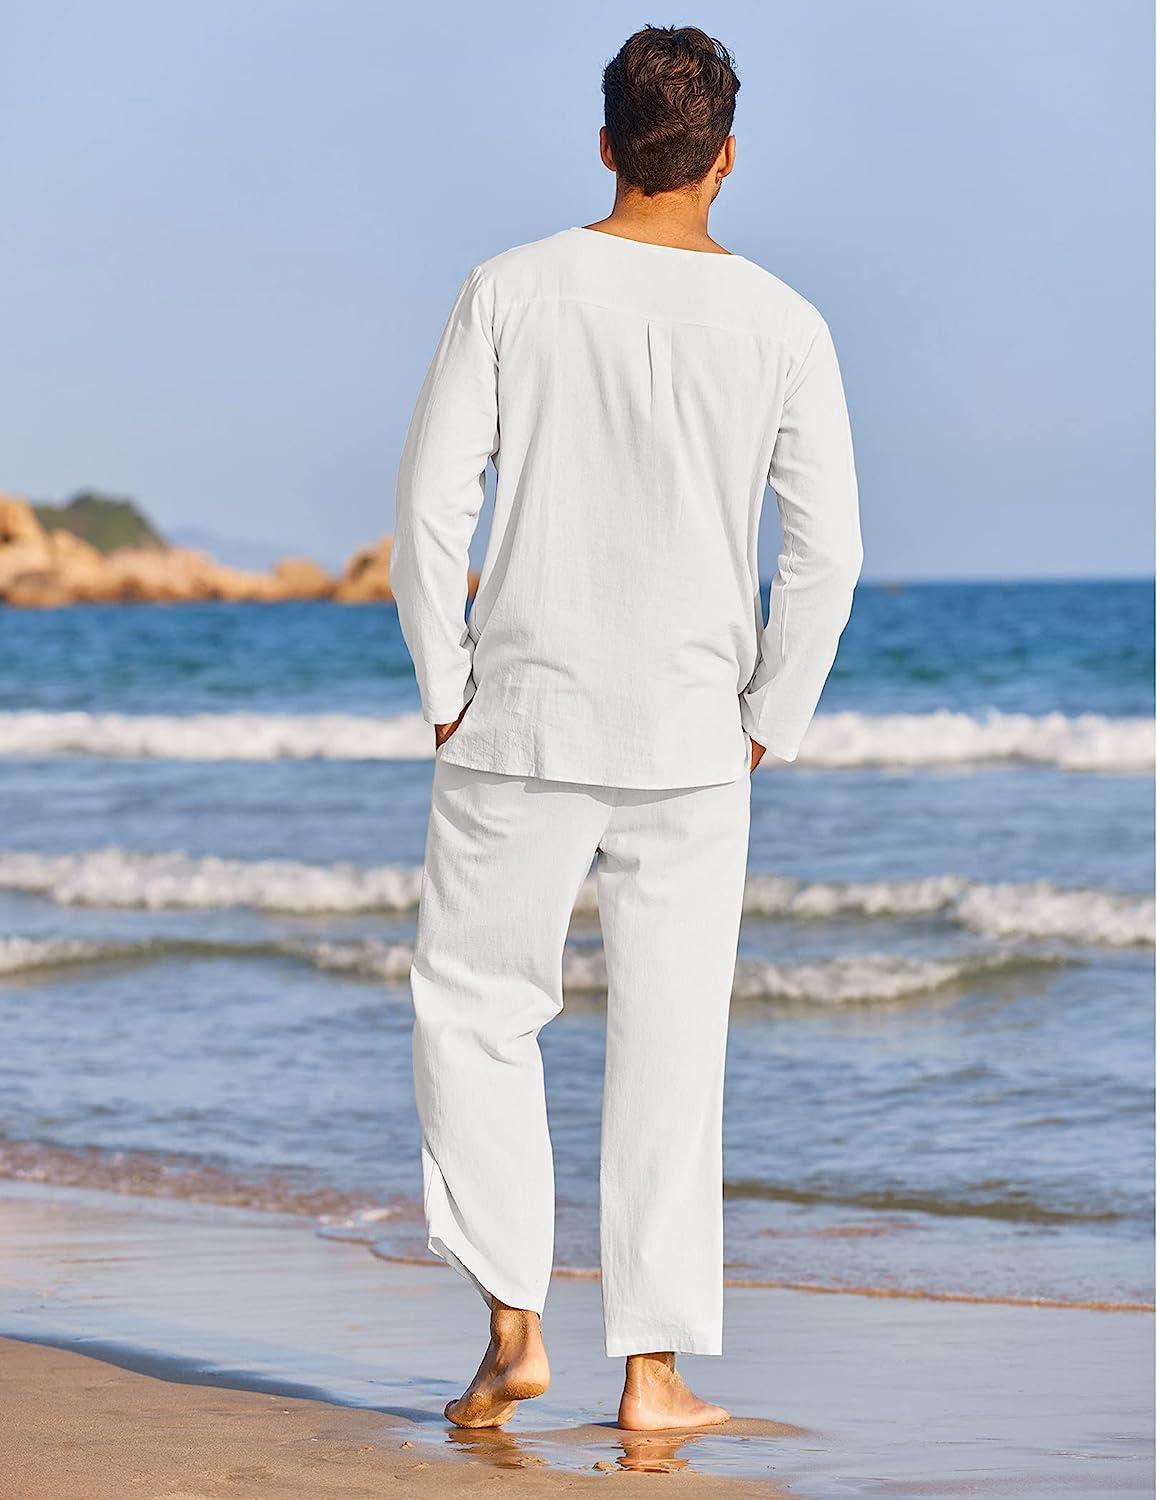 Men's Henley Shirt Long Sleeve Casual Lightweight Summer Beach